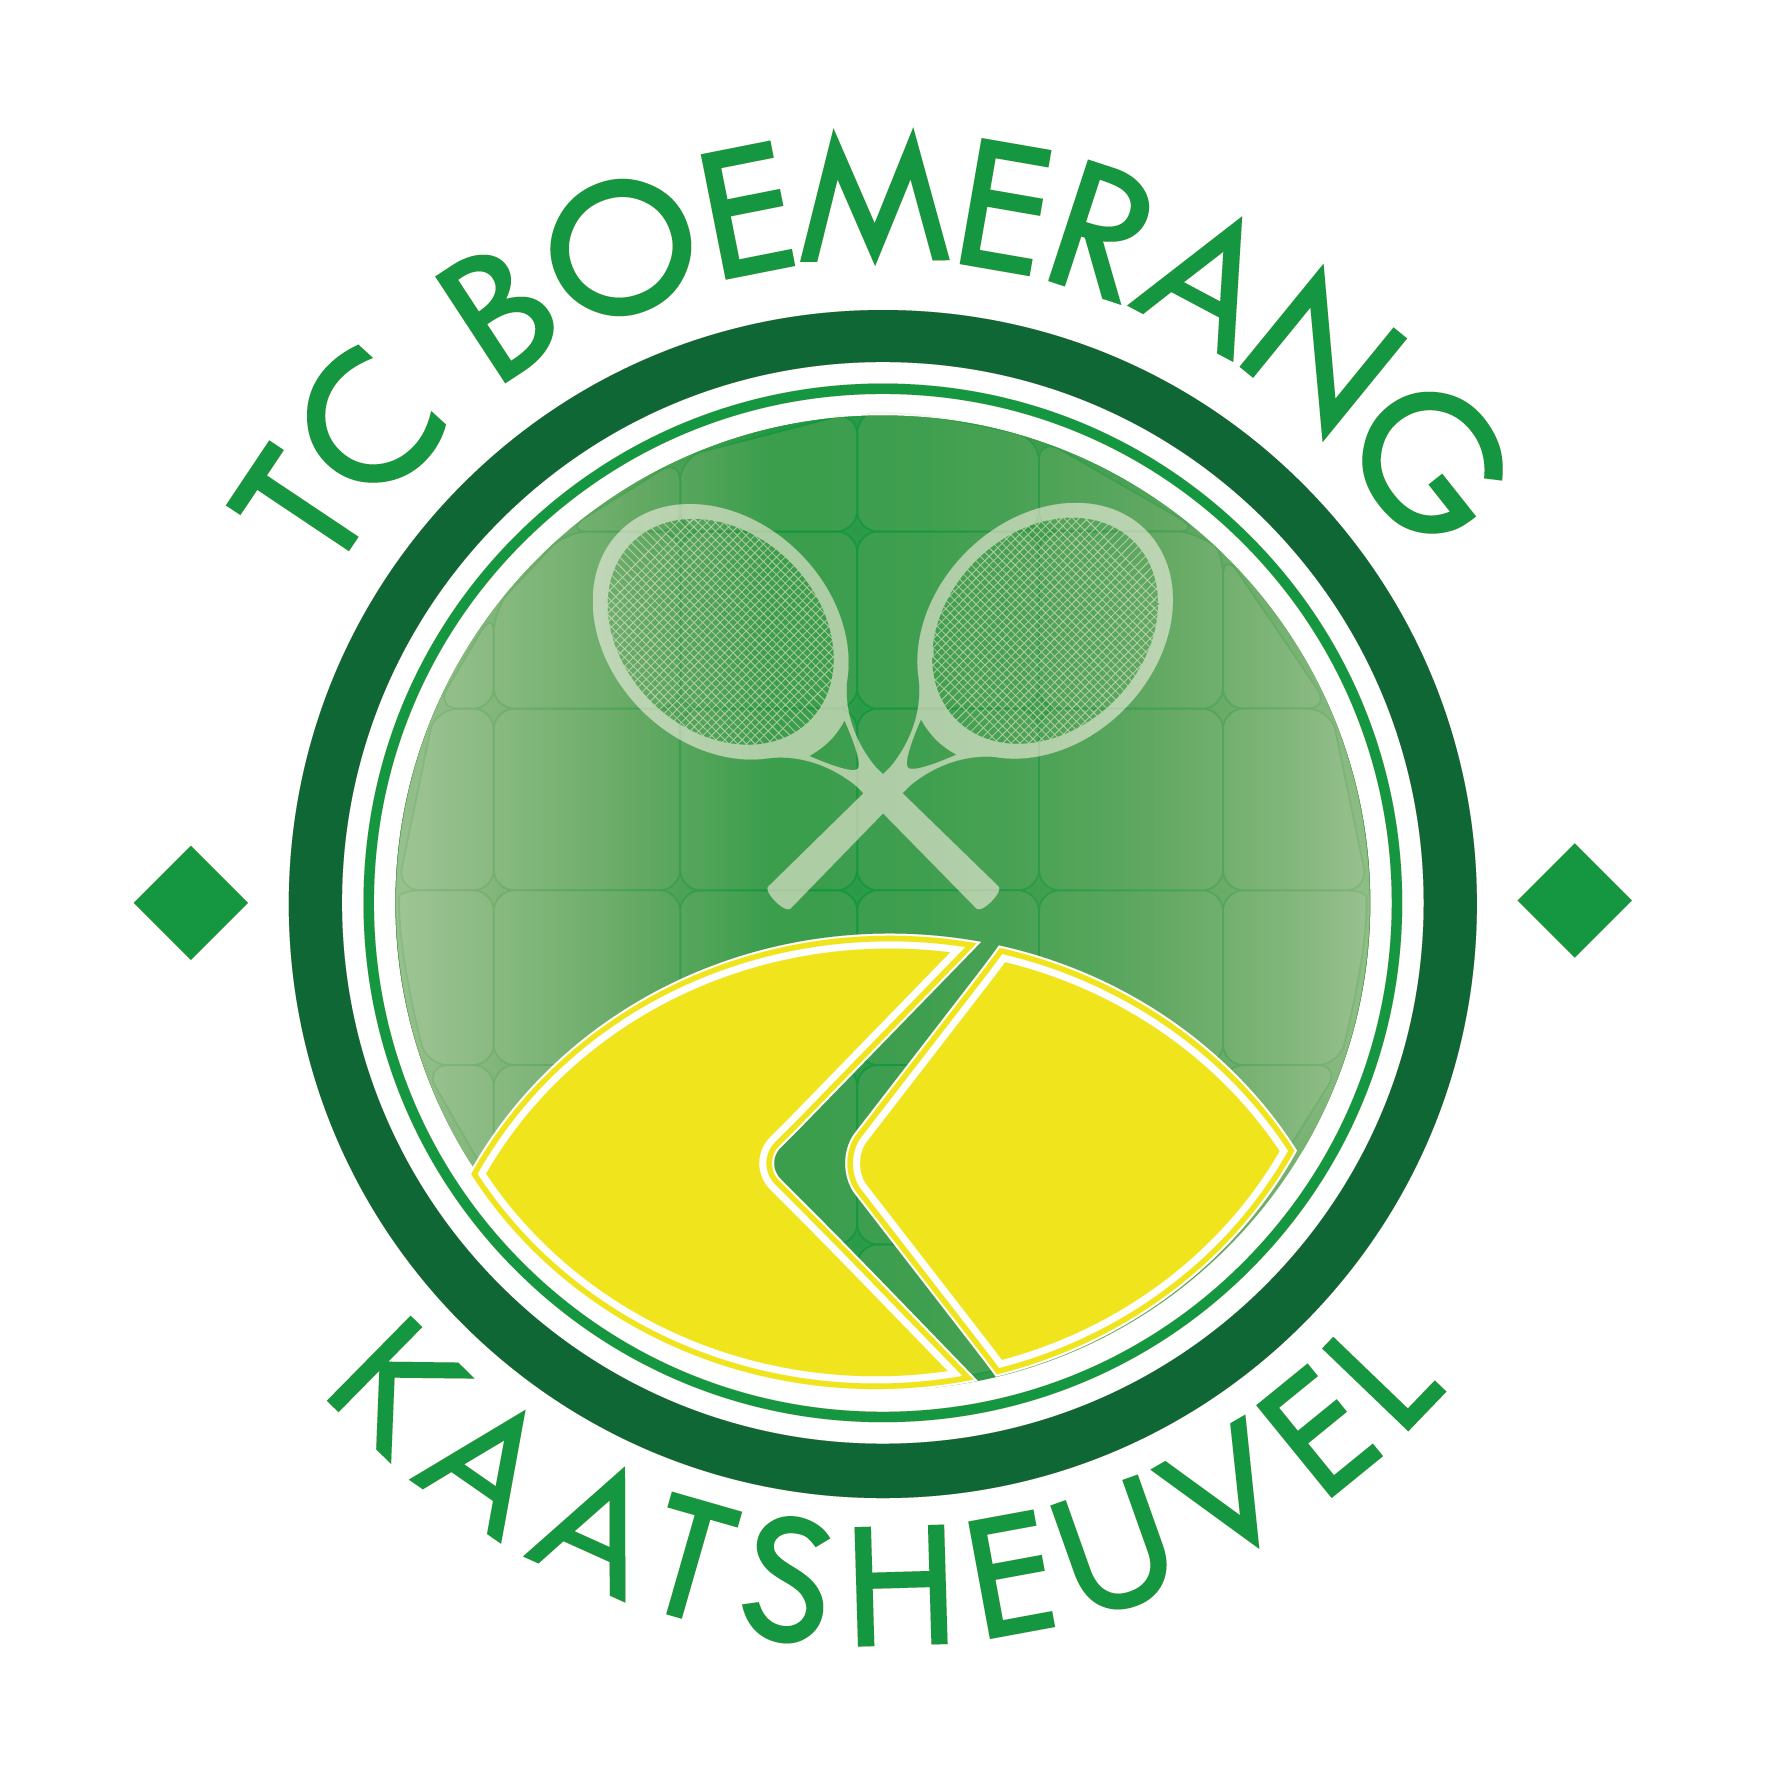 Profile image of venue Tennisclub Boemerang